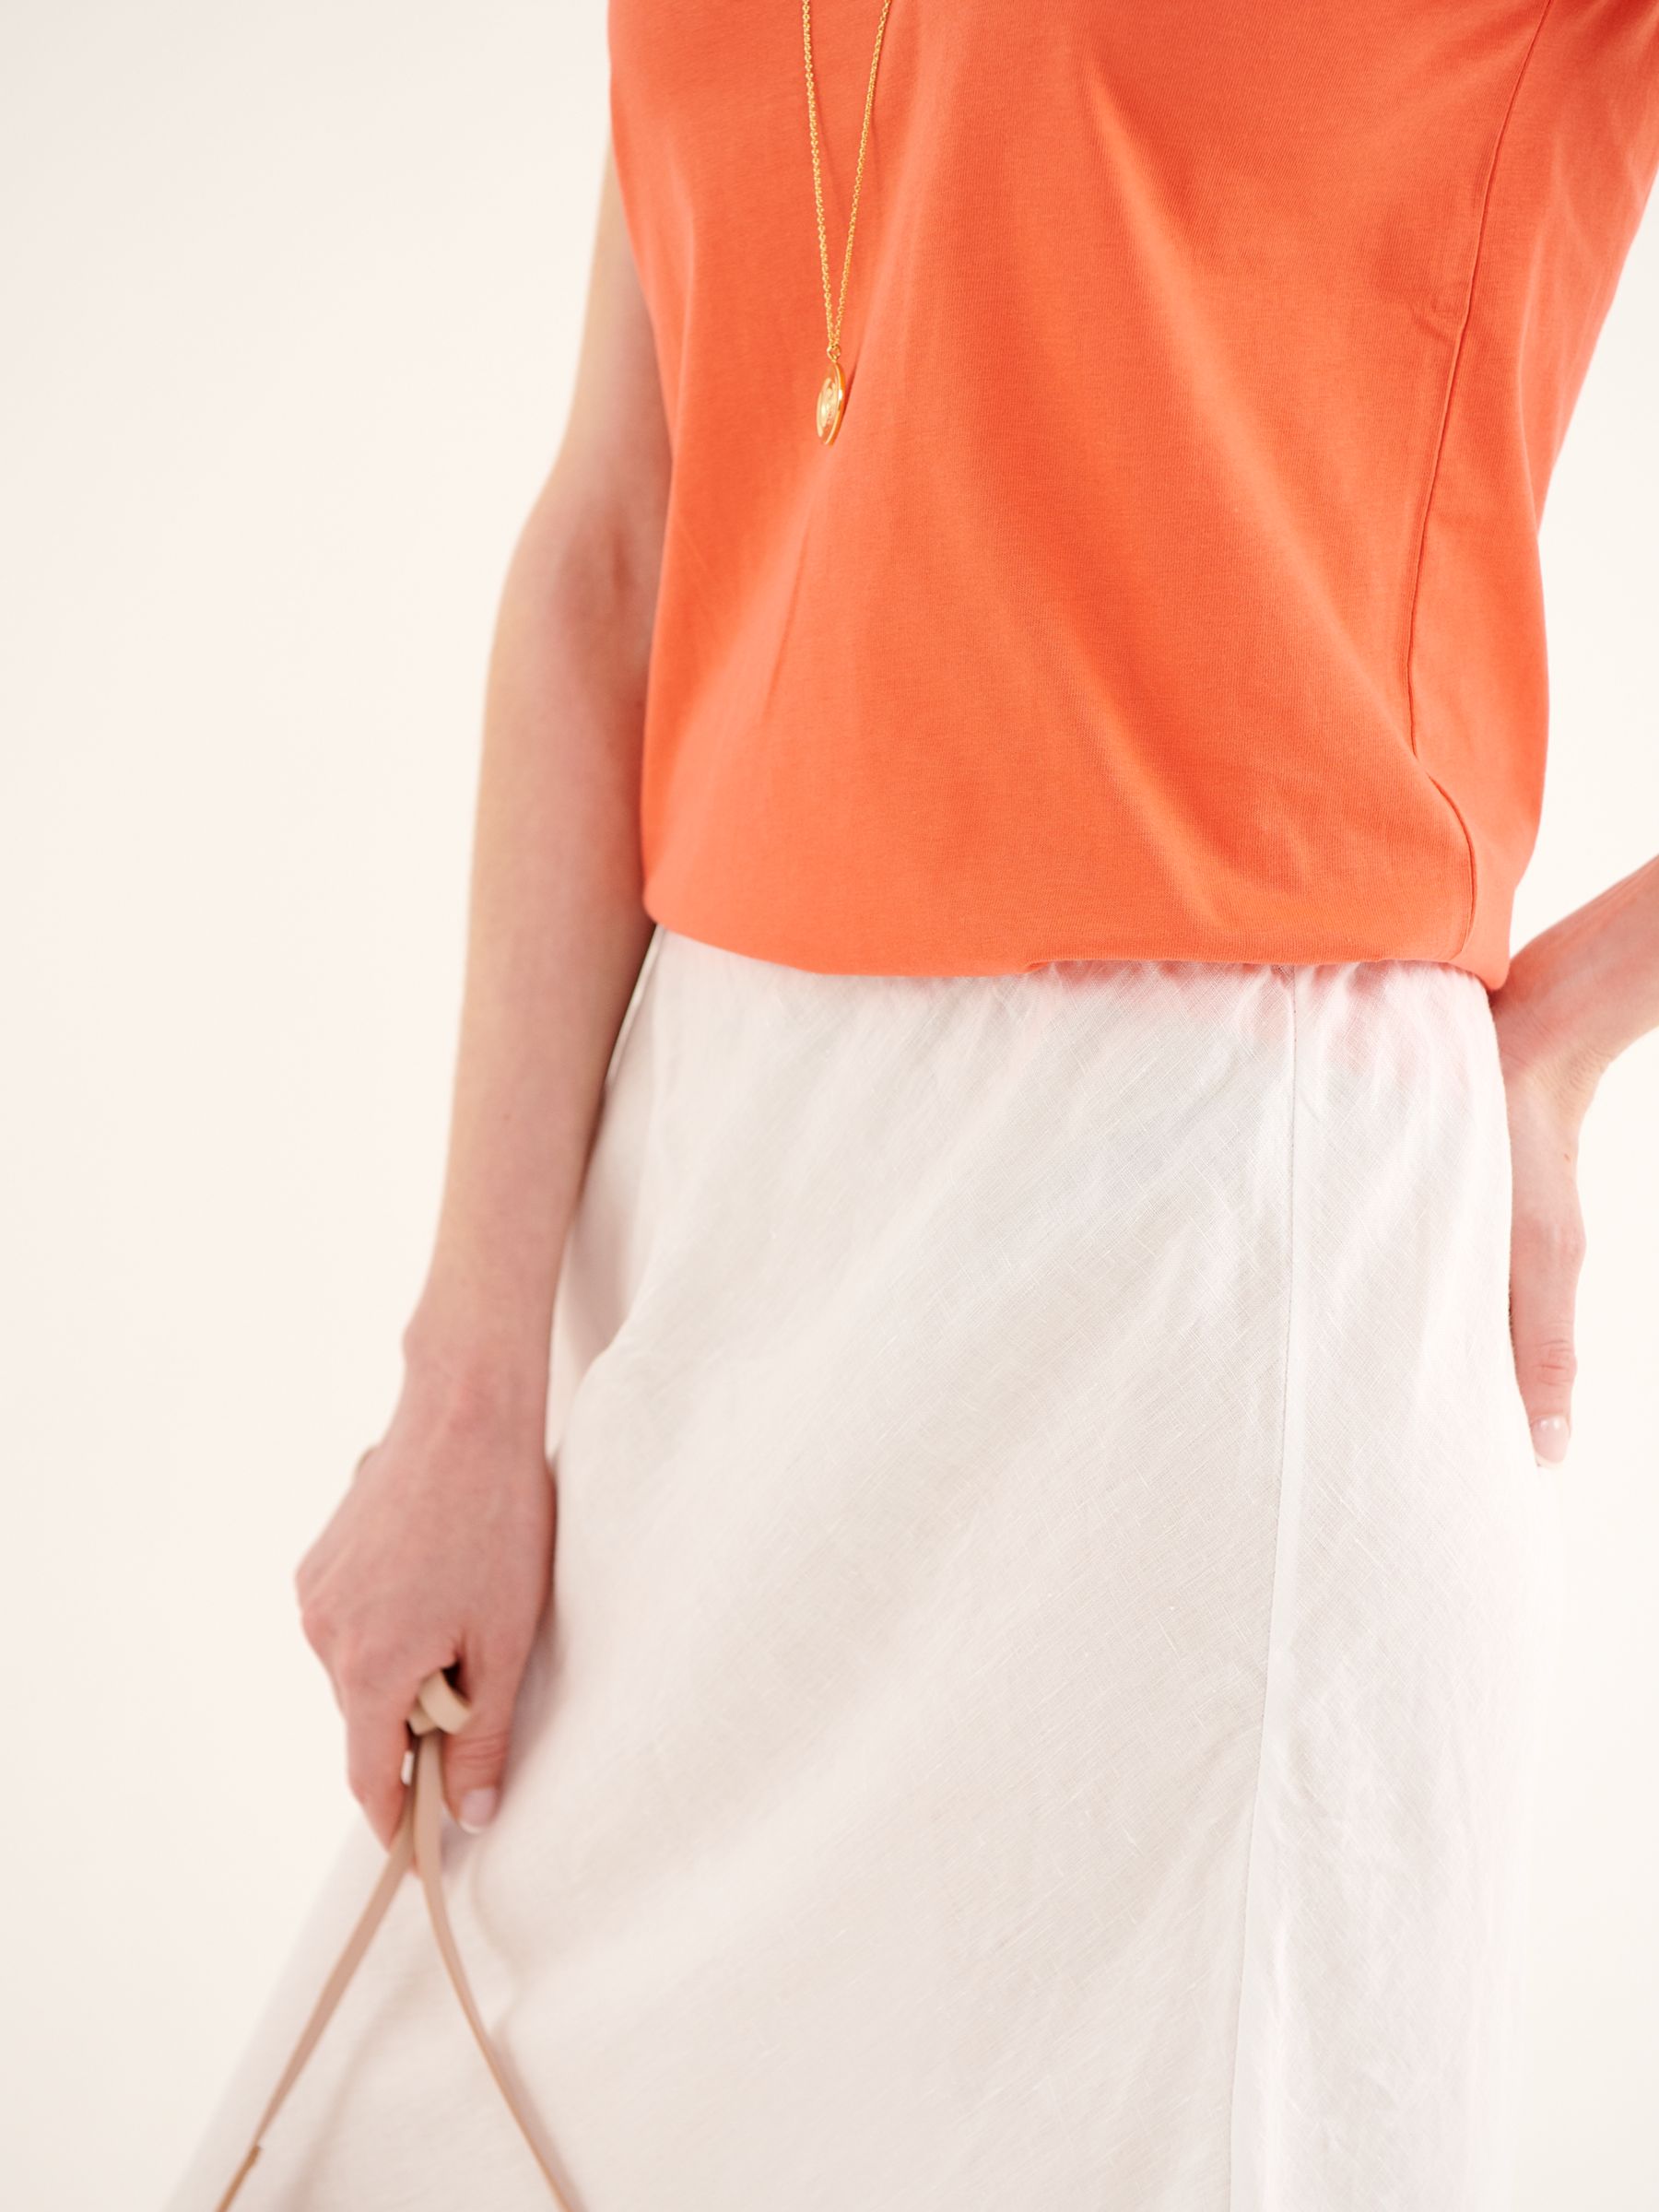 Buy NRBY Tabby Linen Skirt Online at johnlewis.com